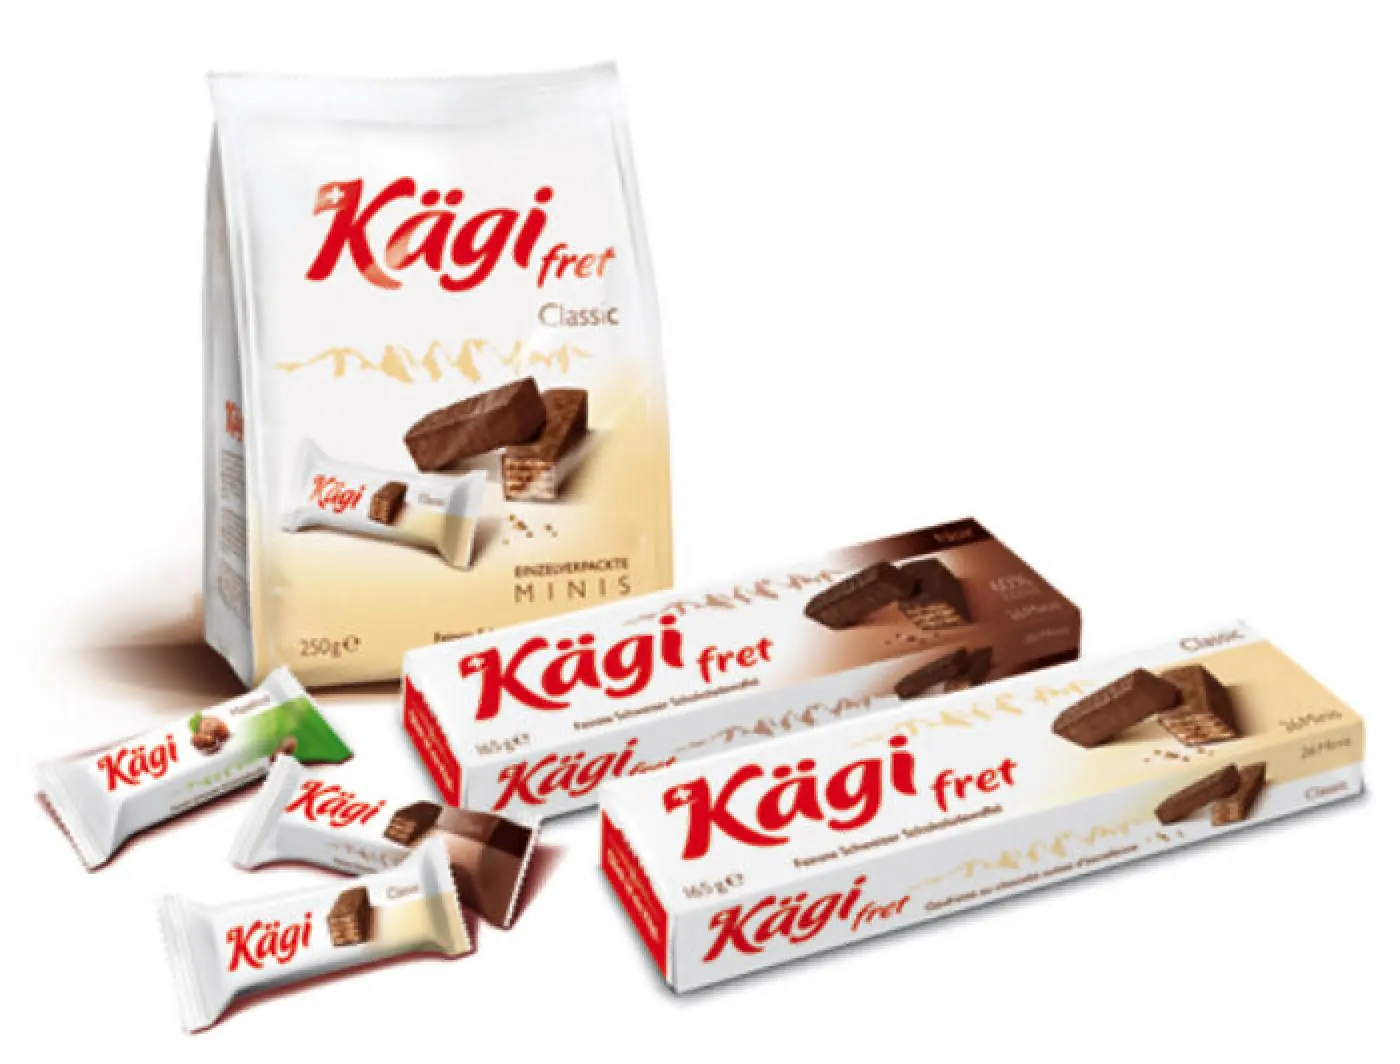 Nouveau design pour les produits Kägi